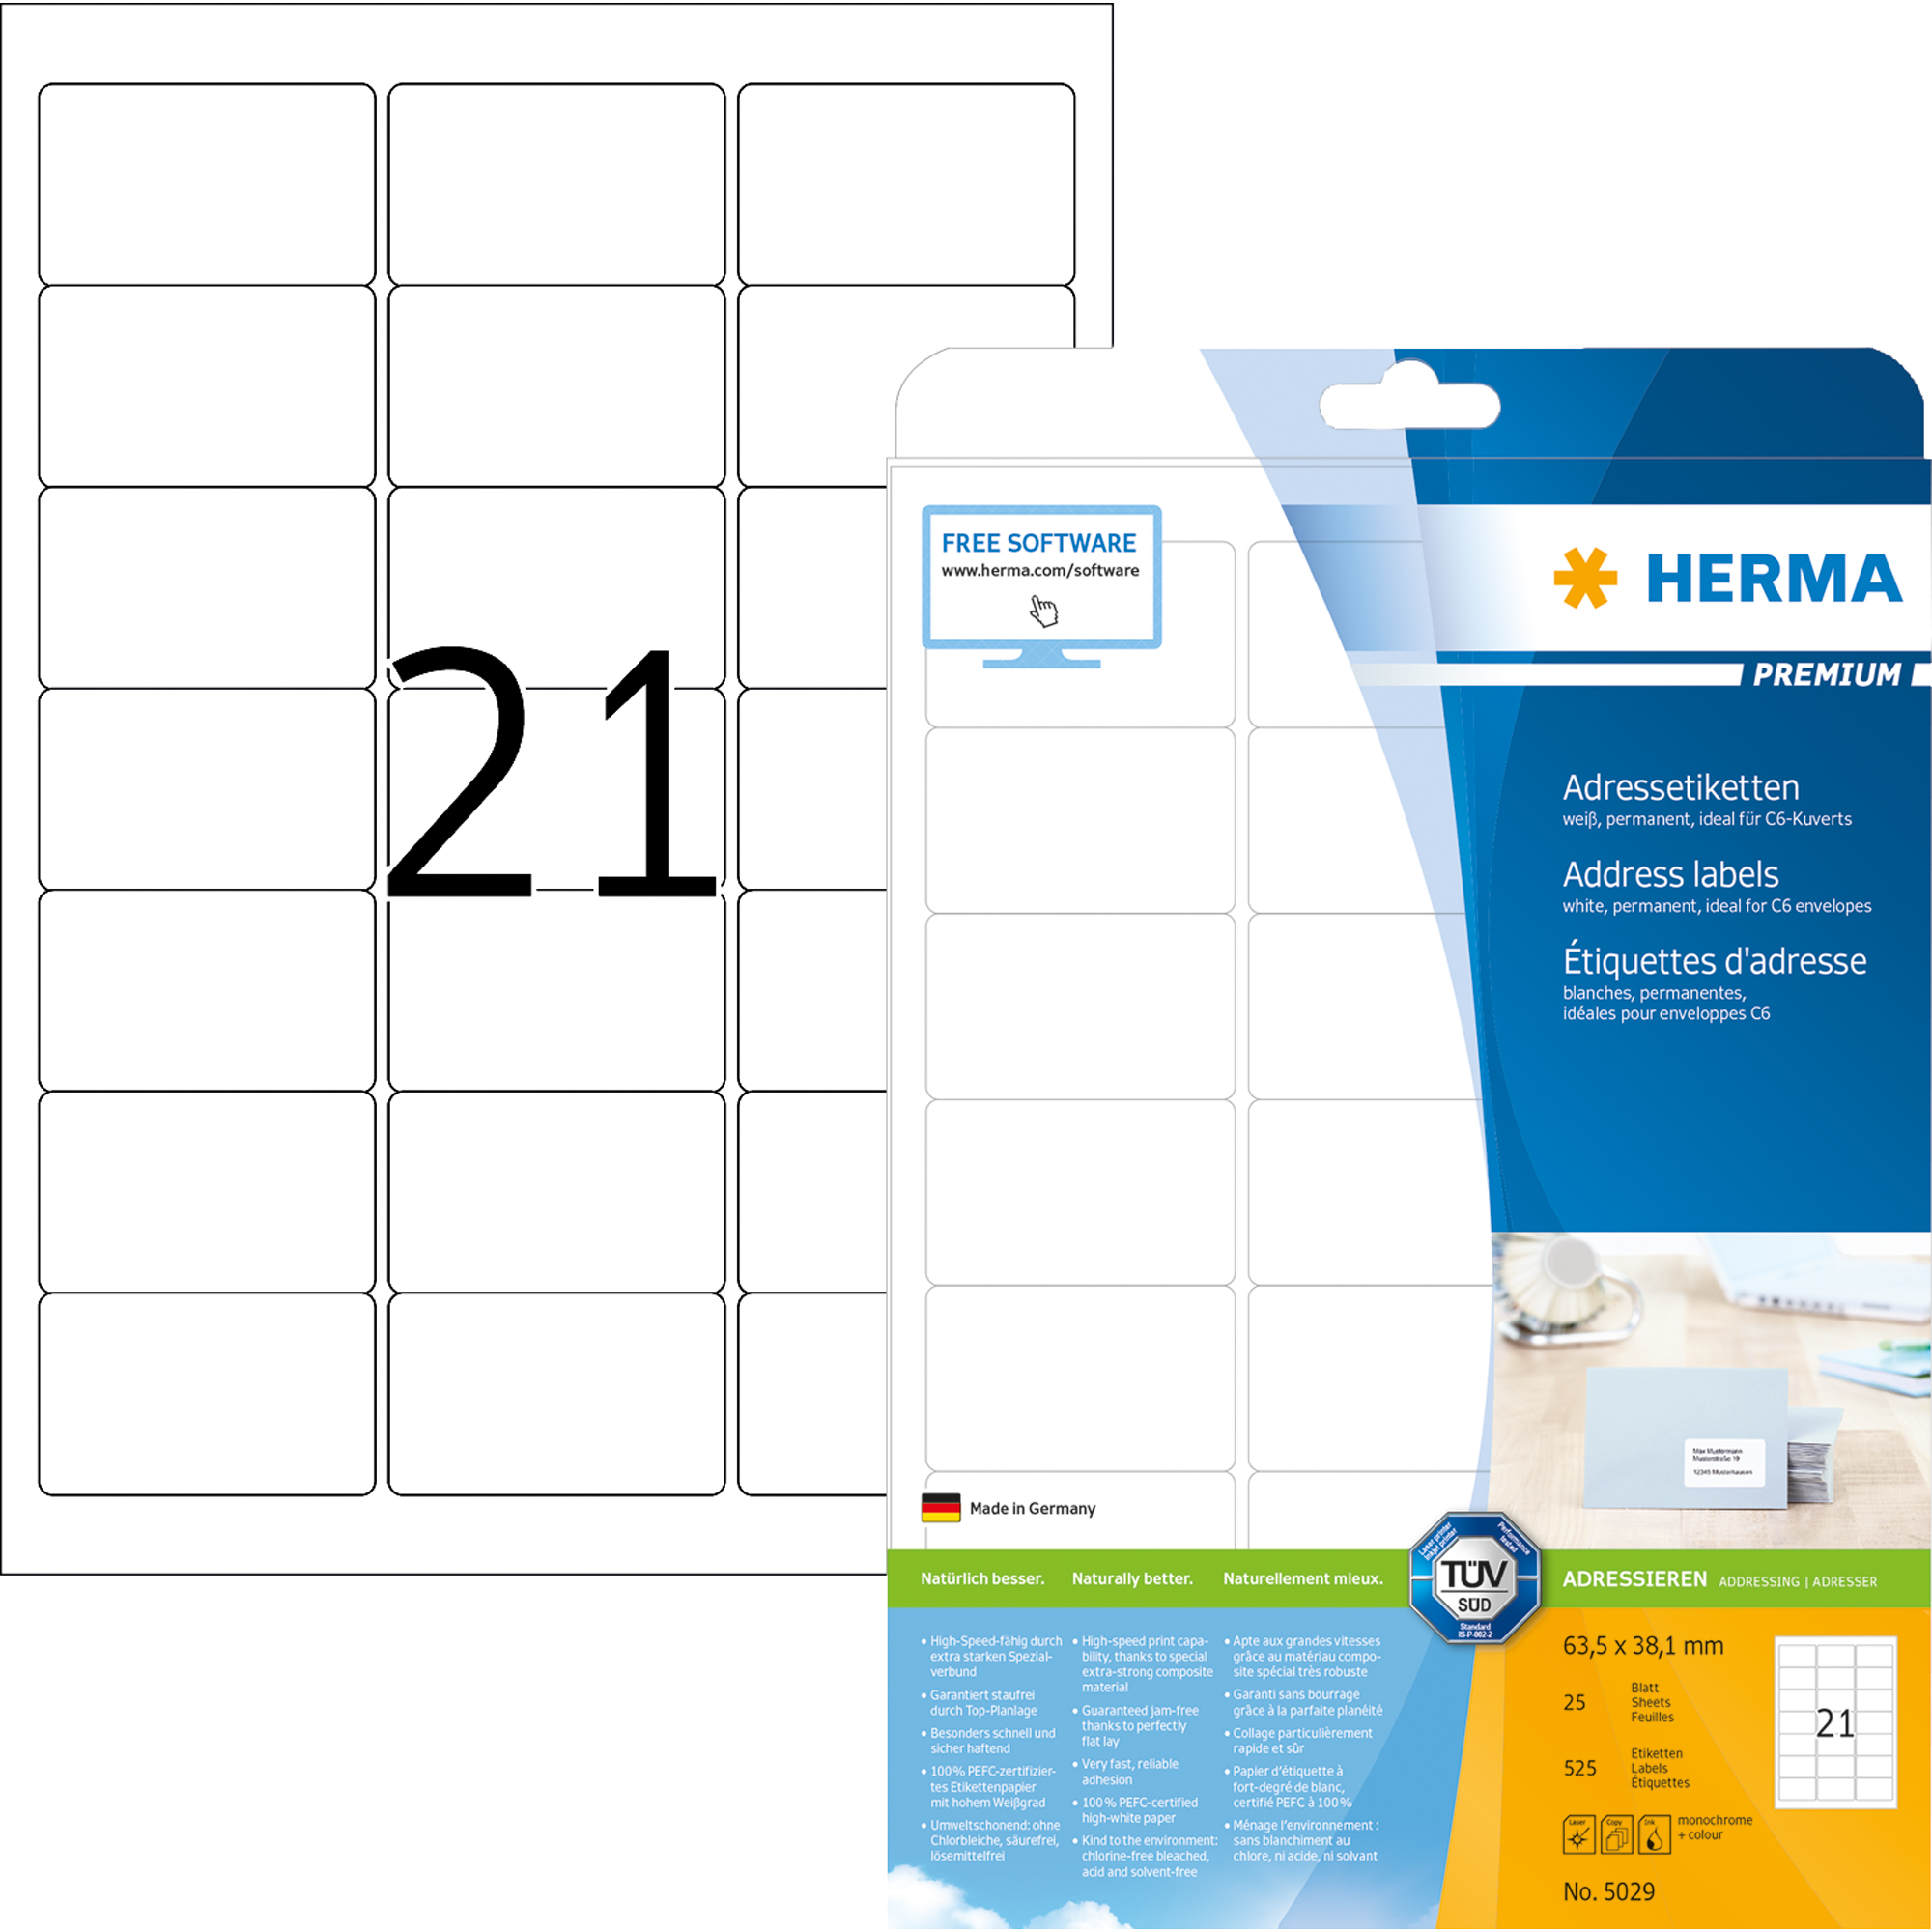 HERMA Adressetikett PREMIUM 63,5 x 38,1 mm 525 Etik./Pack.